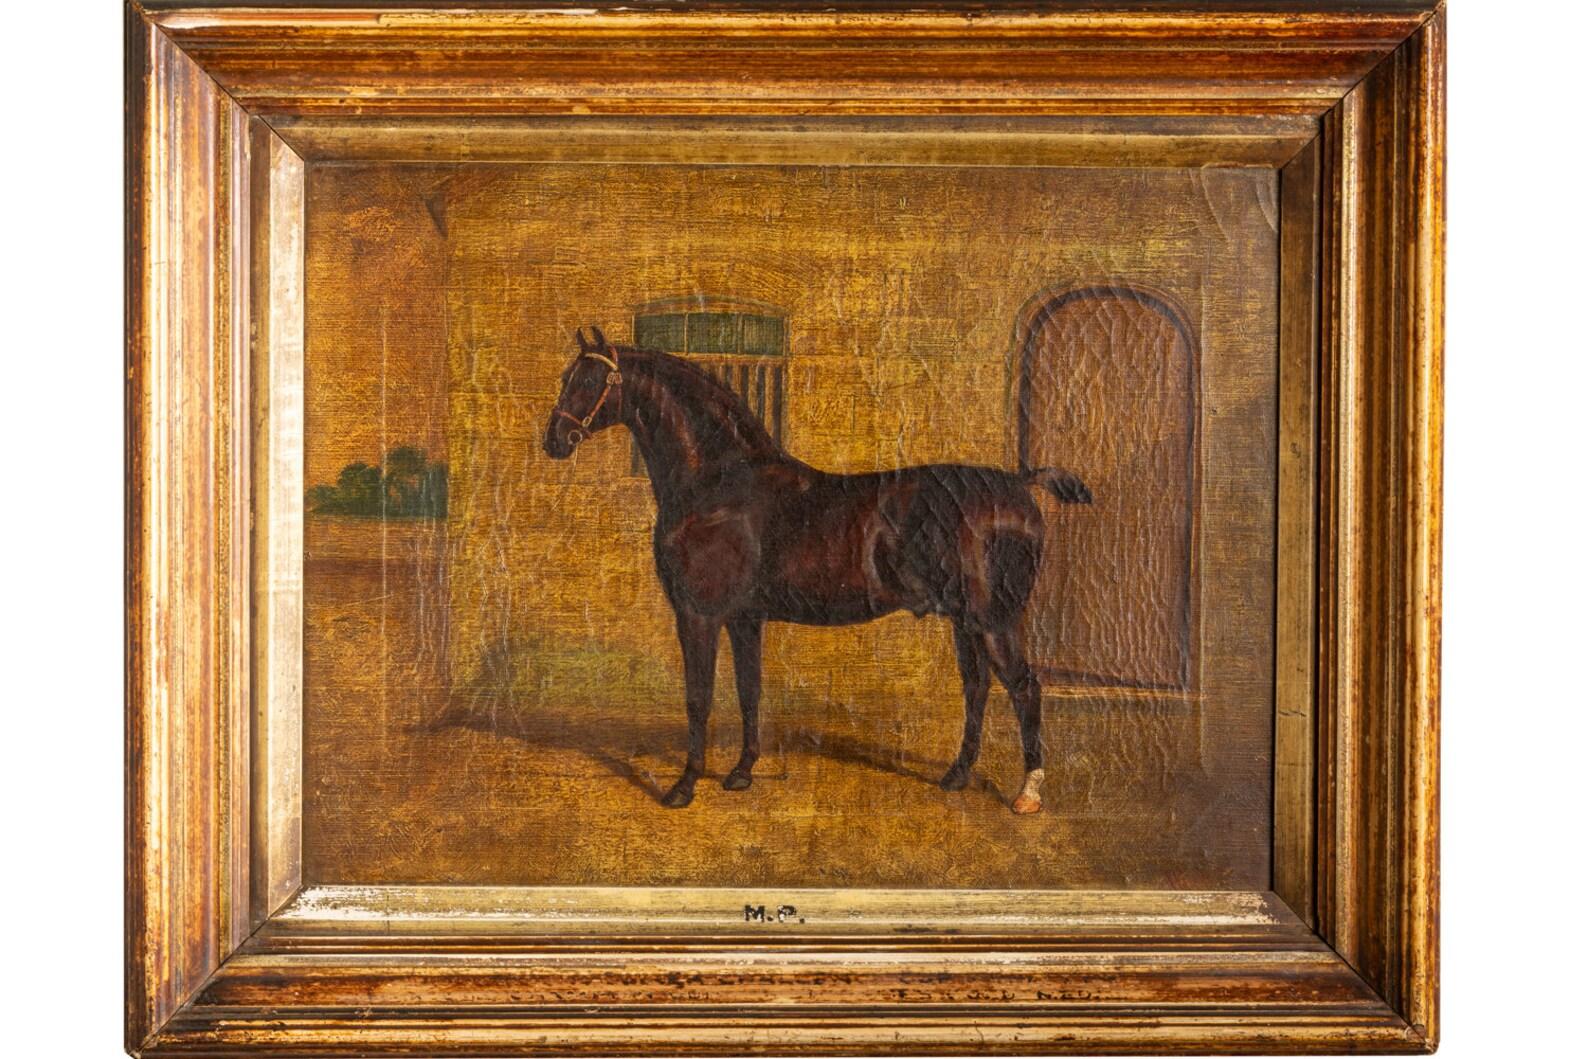 Ancienne peinture à l'huile victorienne de la fin du XIXe siècle, vers 1885, d'Albert Clark (1843-1928) représentant un cheval de chasse se tenant probablement à l'extérieur des écuries et peinte au centre de la composition avec les arbres visibles